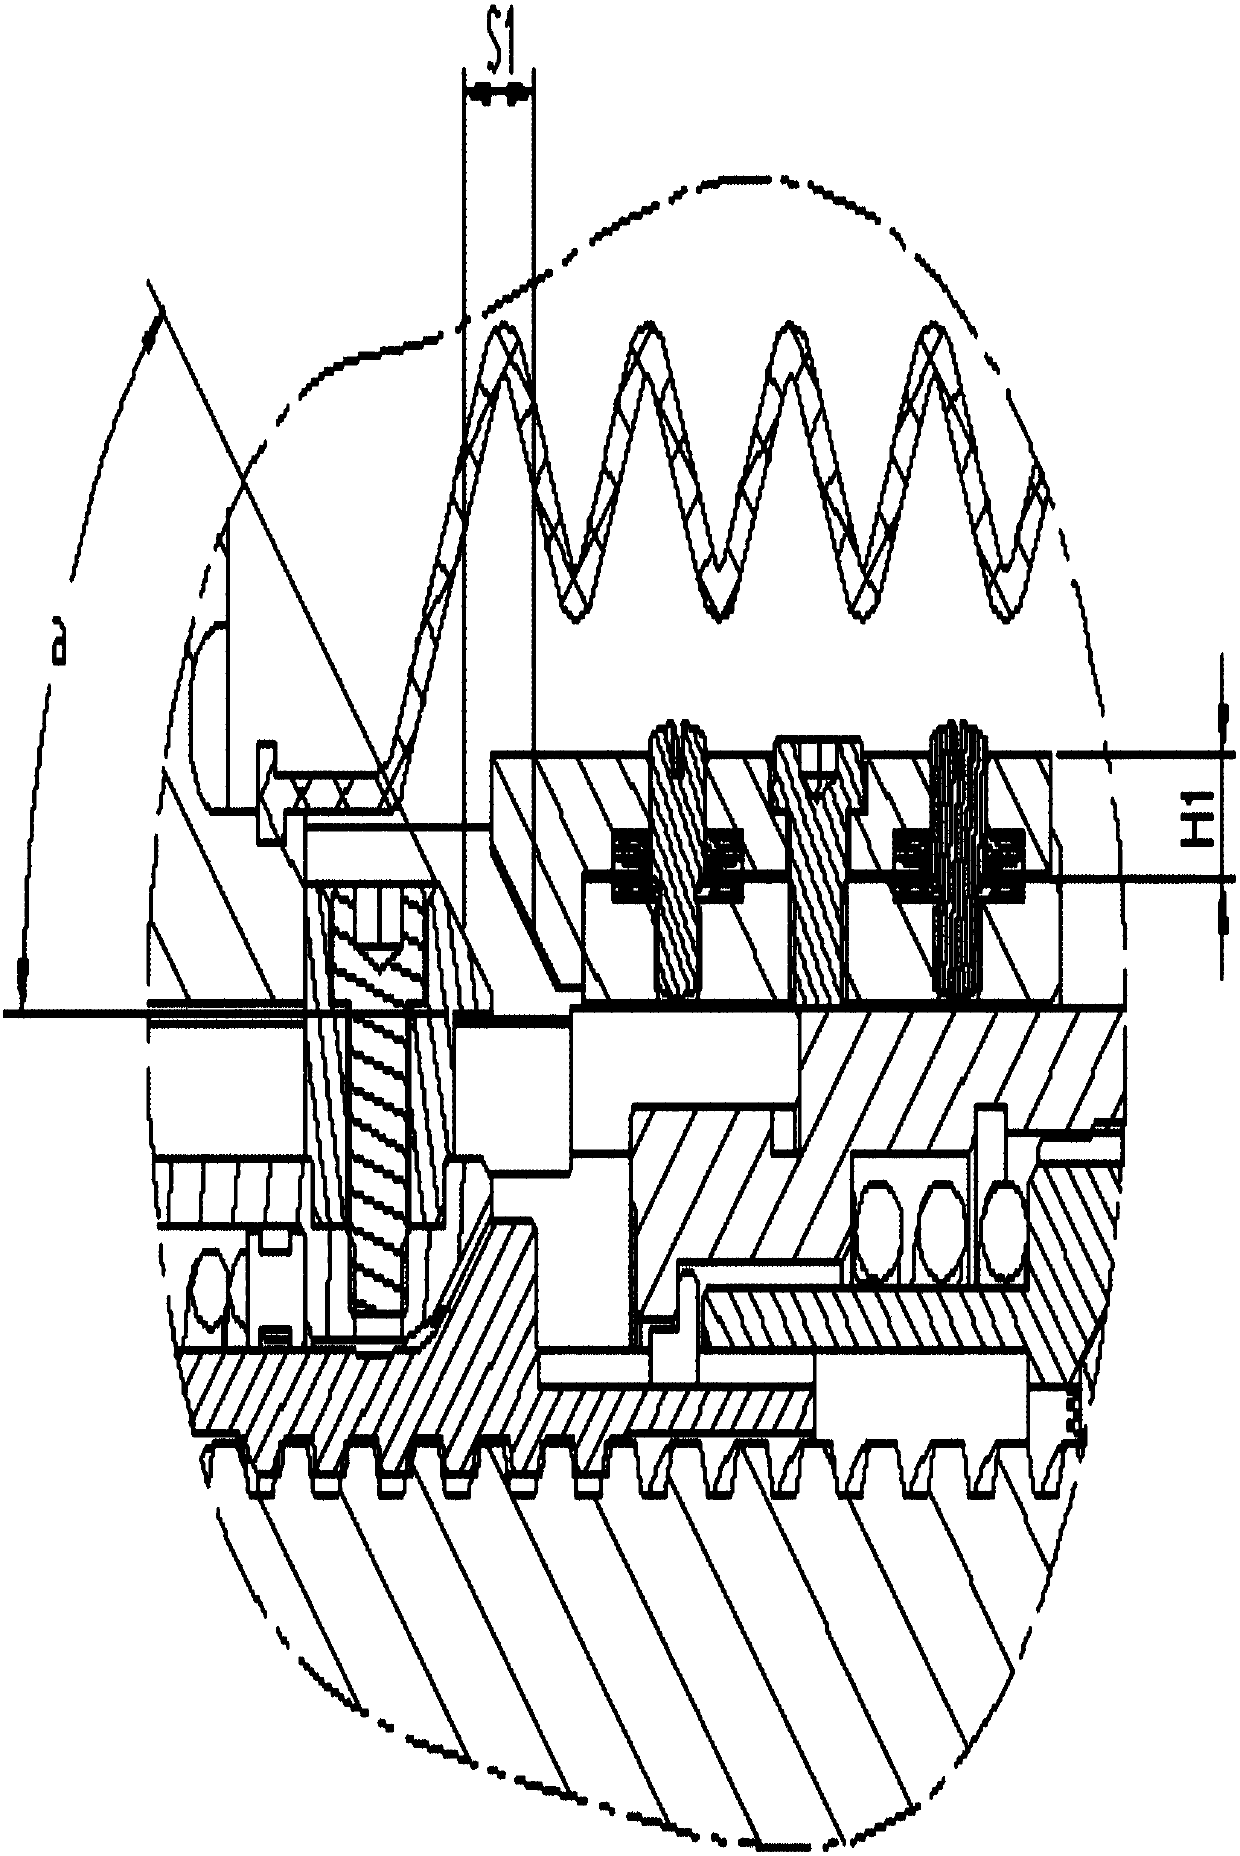 Brake cylinder clearance adjusting mechanism and brake cylinder